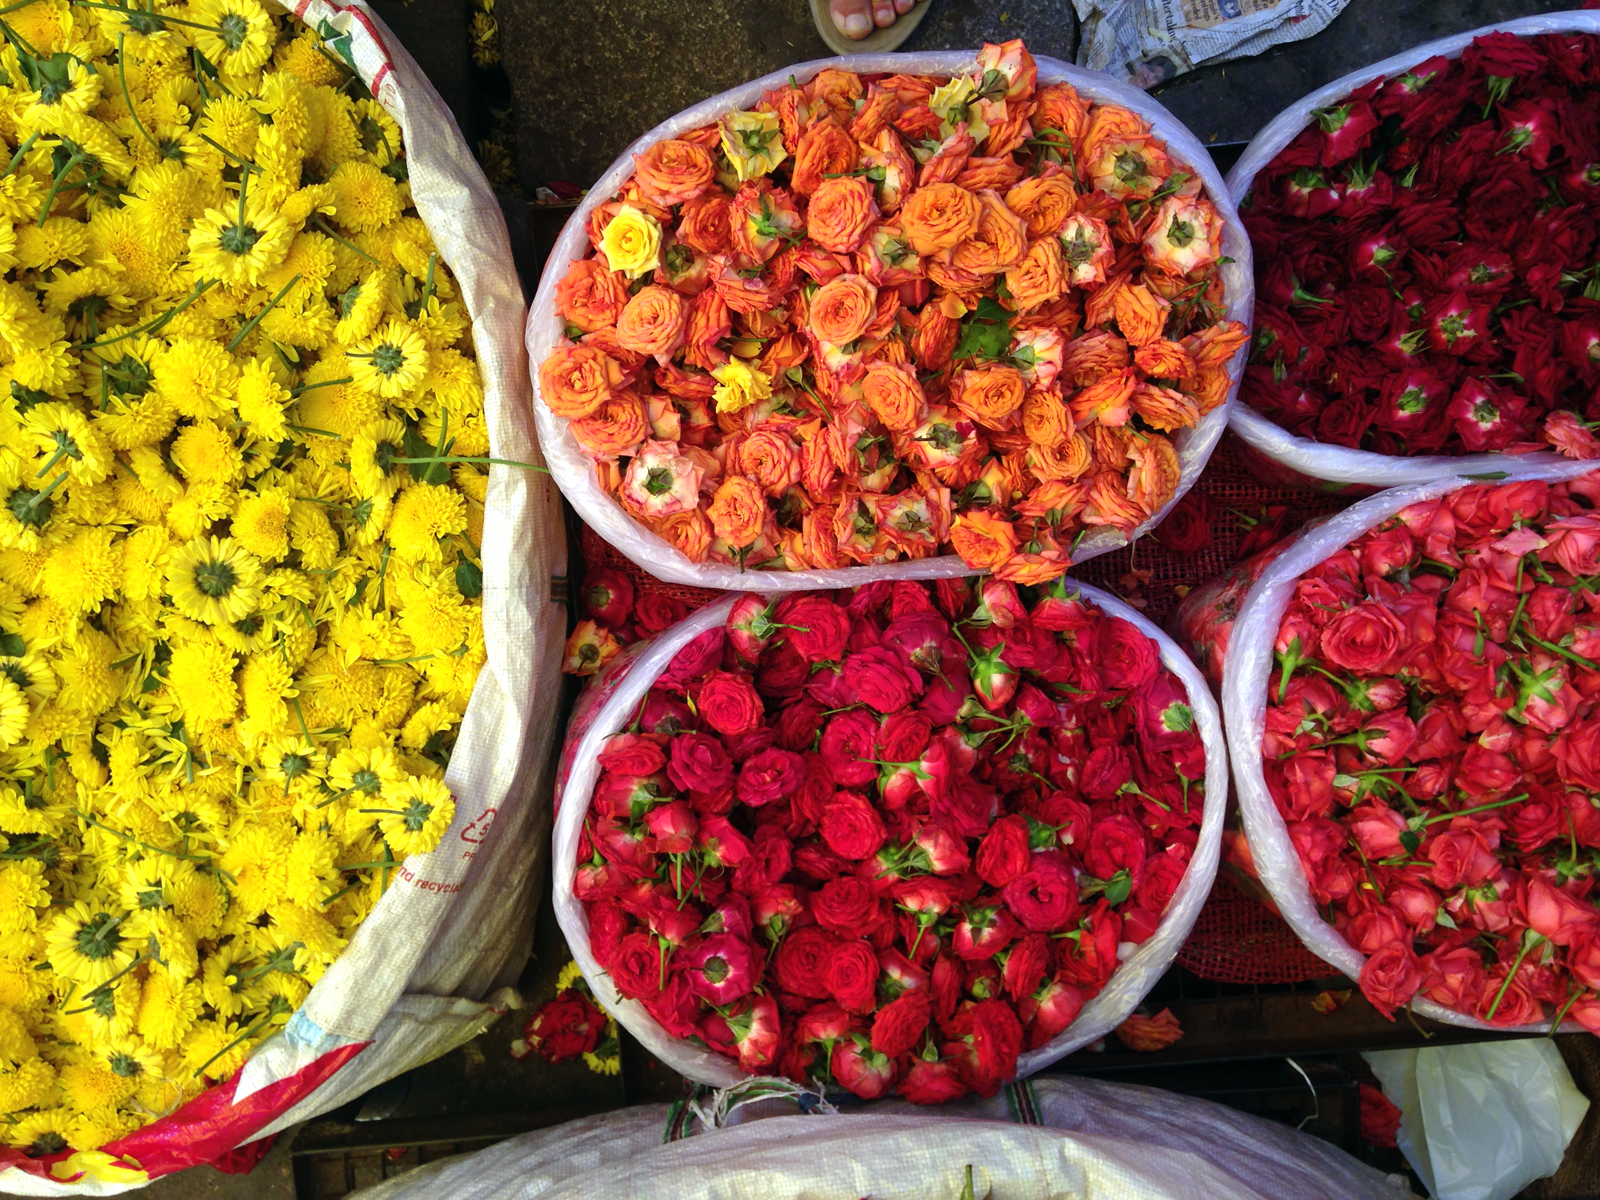 flower-market-india.jpg